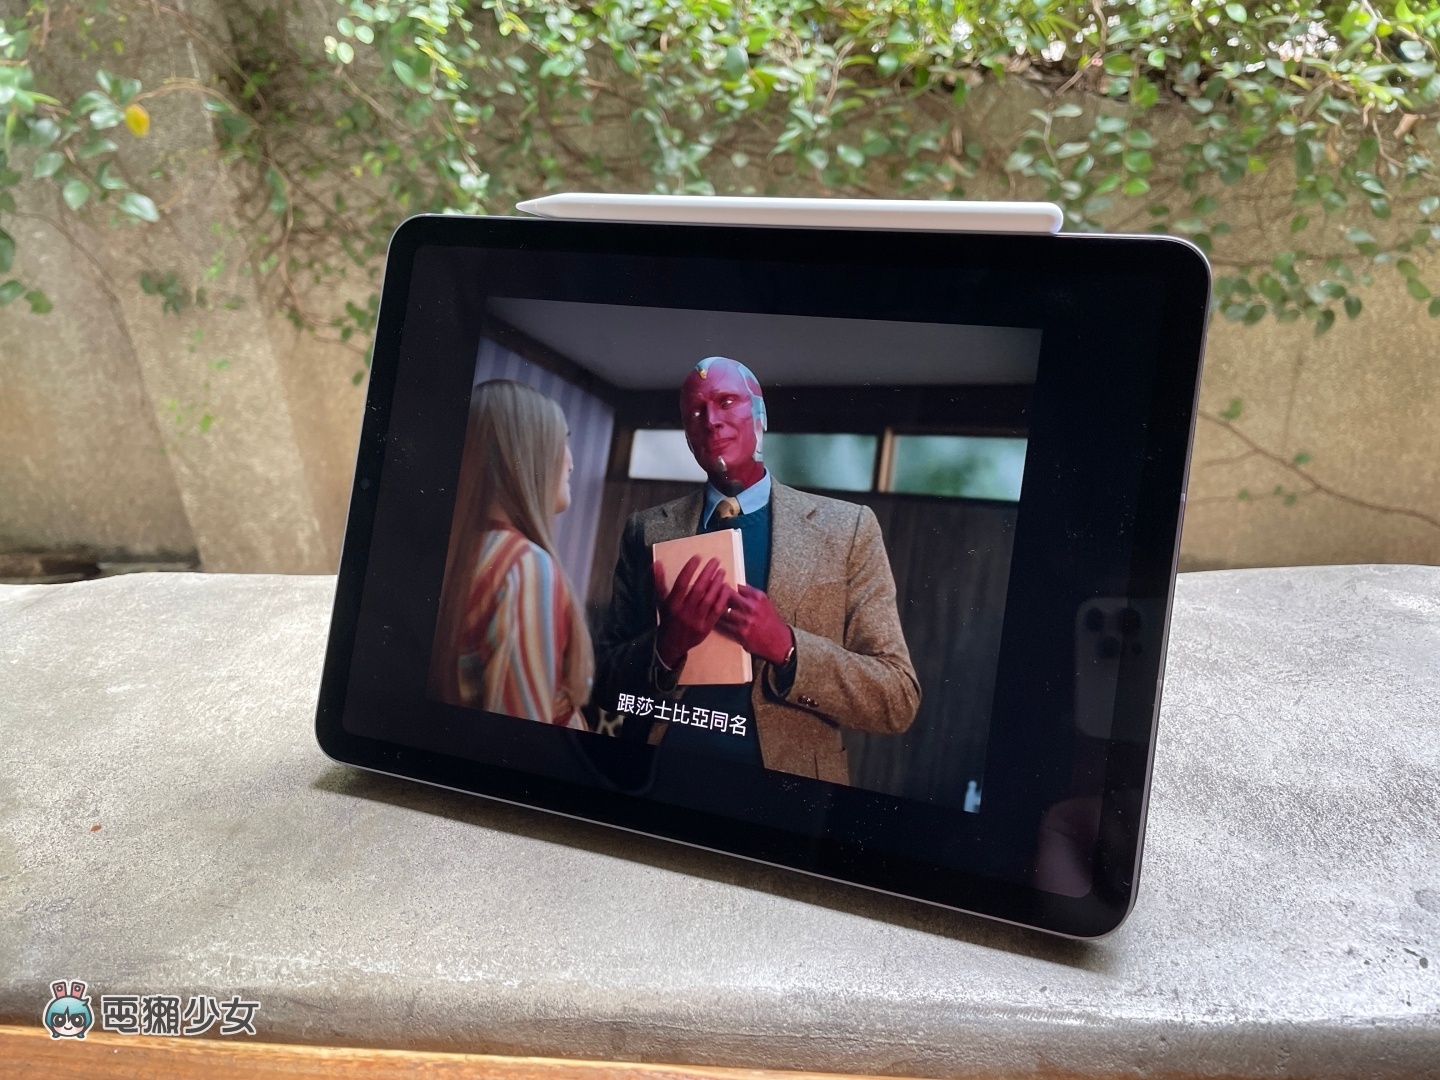 開箱｜全新的藍色 iPad Air 5 使用心得 生活娛樂、工作筆記、影音需求 用它很可以